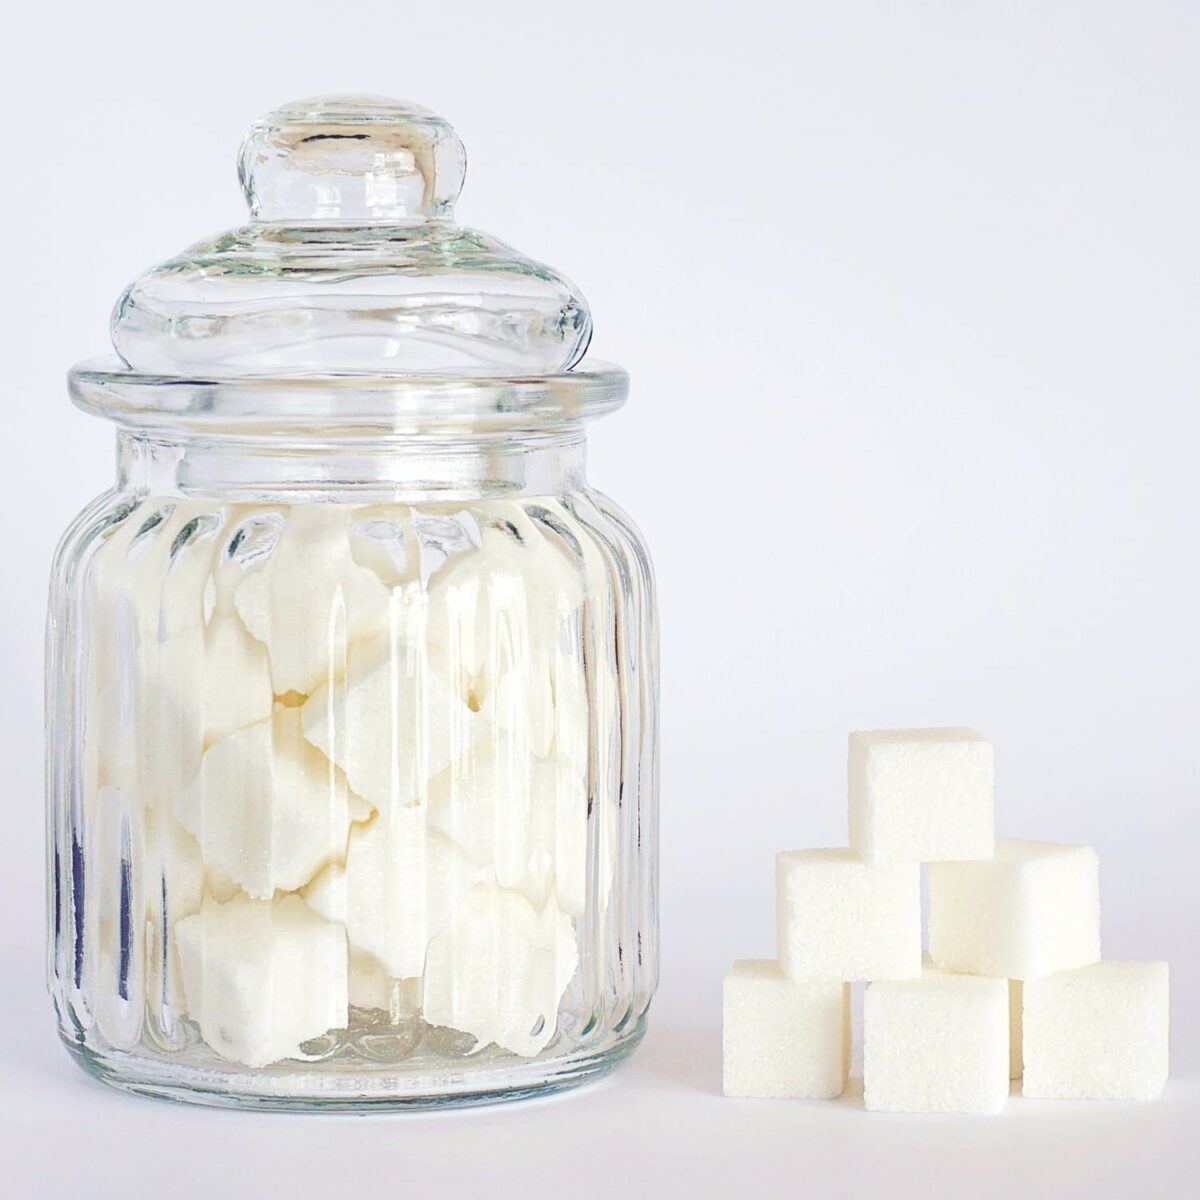 Süßstoffe: Eine Alternative zu Haushaltszucker. Wie unbedenklich sind sie?